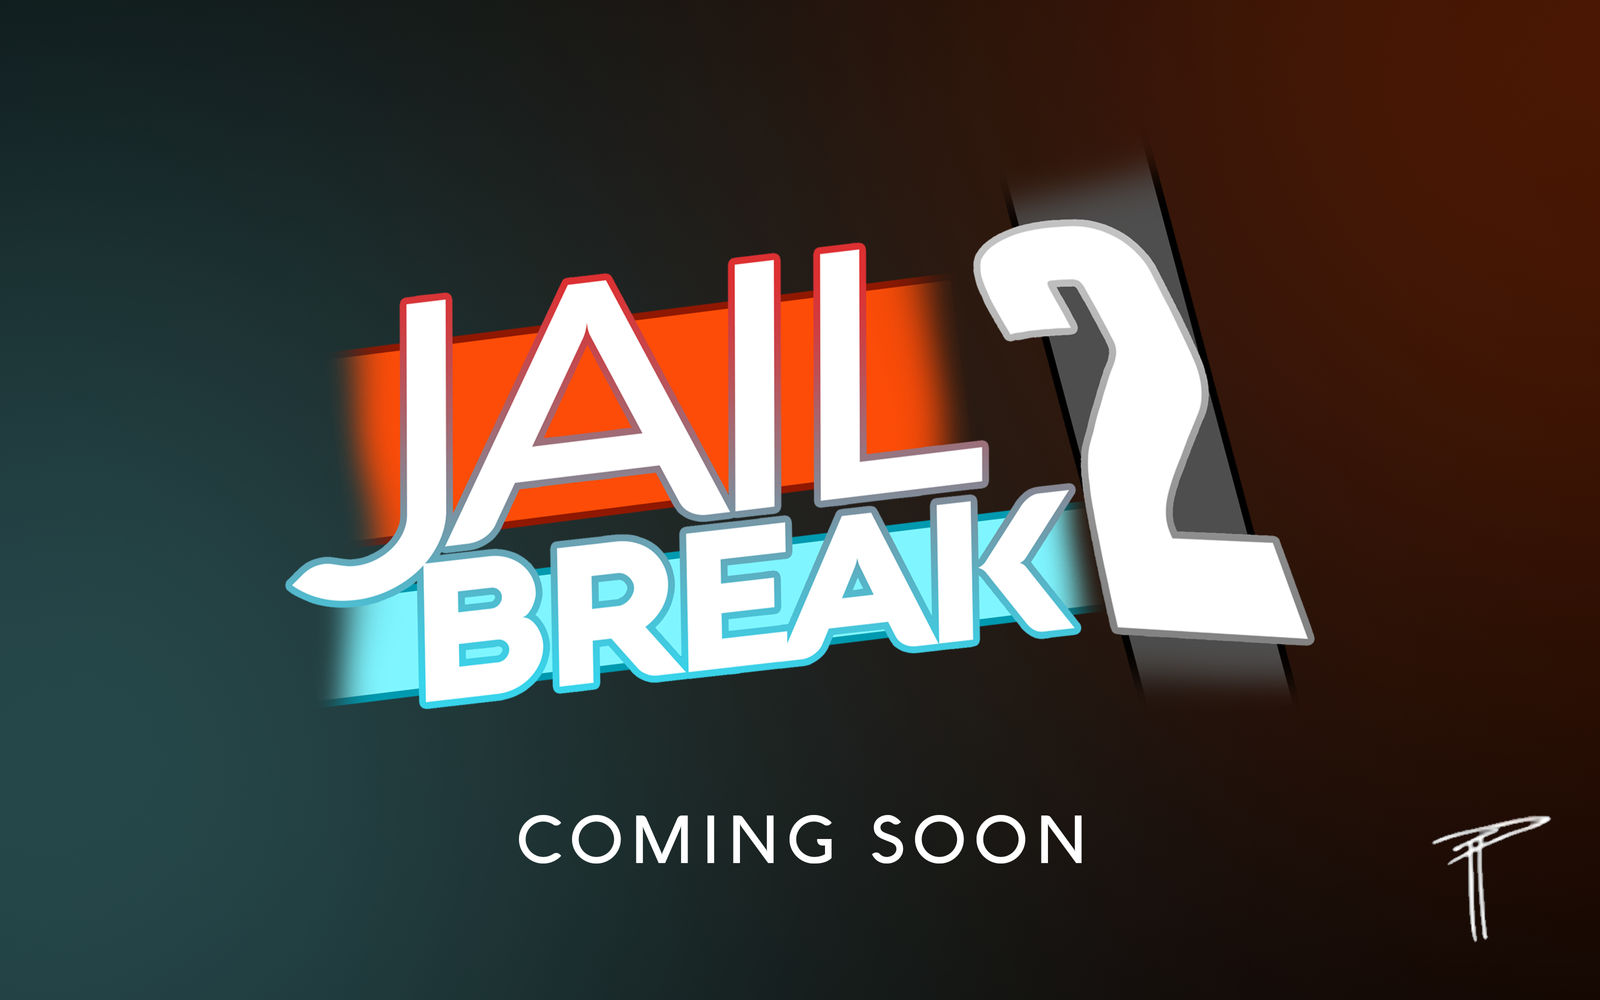 Jailbreak 2 Teaser By Wesleyvianen On Deviantart - jailbreak 2 roblox